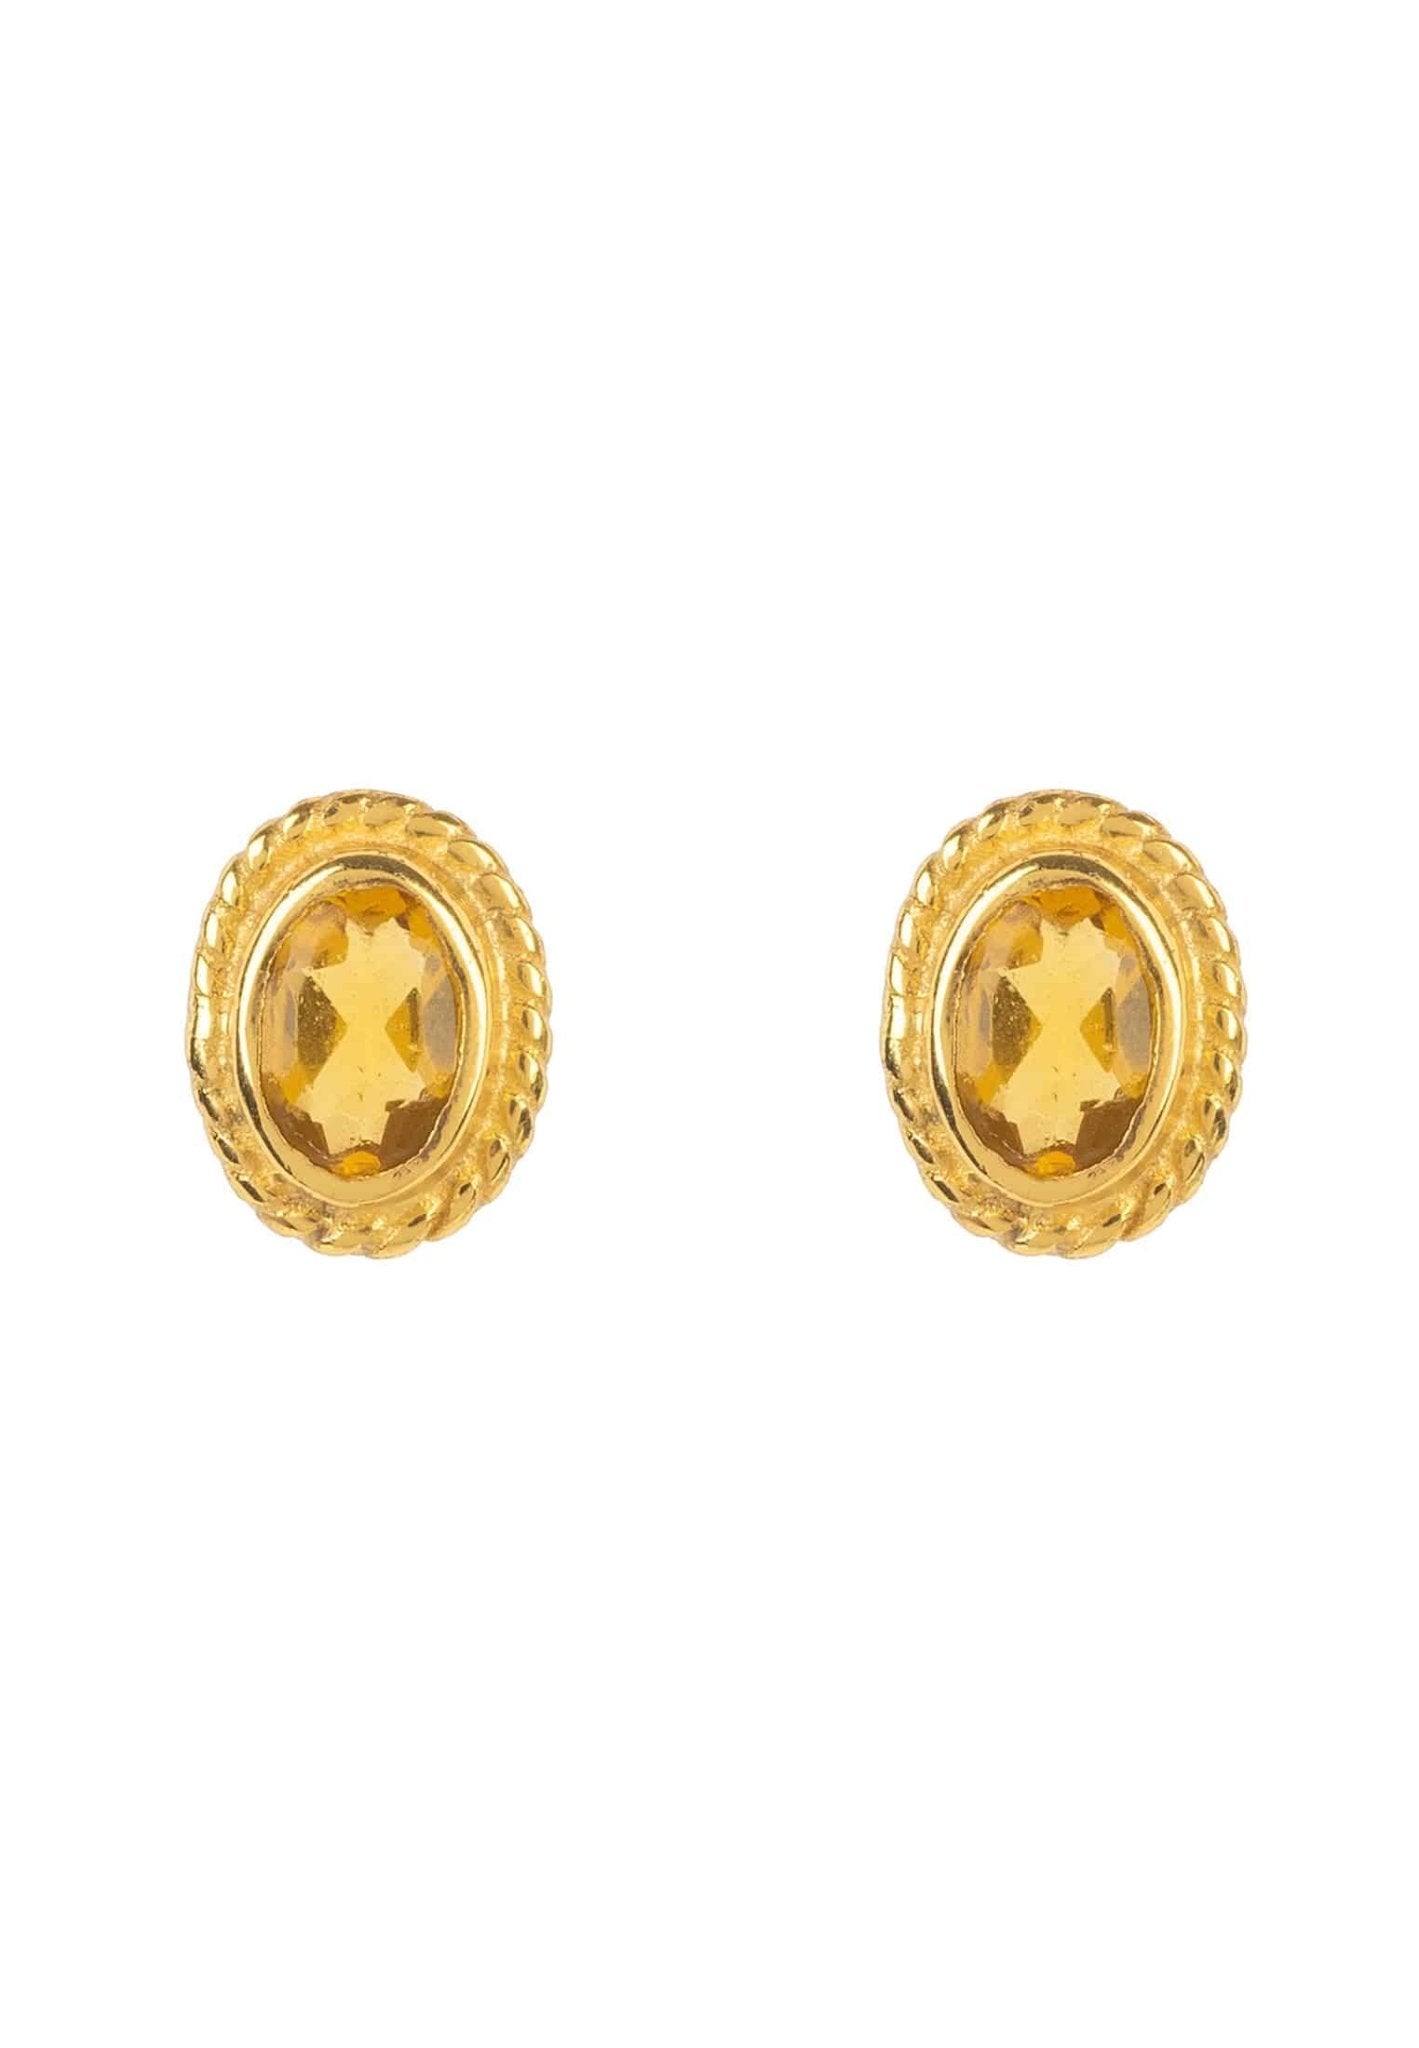 Birthstone Gold Gemstone Stud Earring November Citrine - LATELITA Earrings